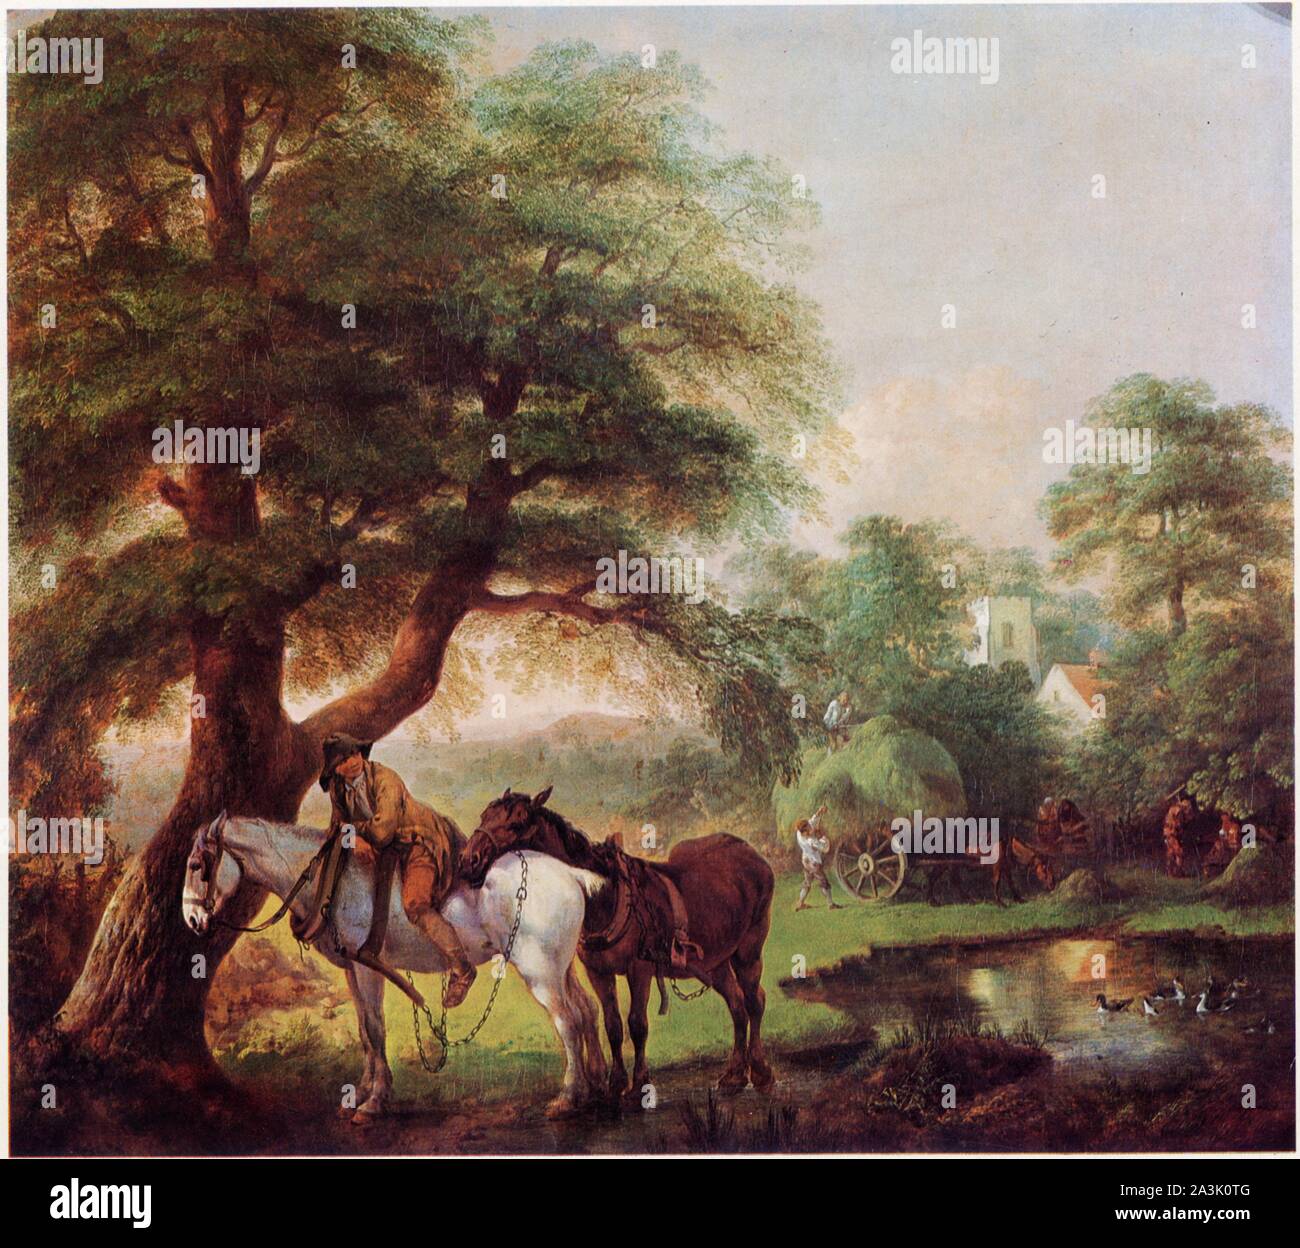 Thomas Gainsborough. paysage avec un Paysan et des chevaux. 1755 Stockfoto